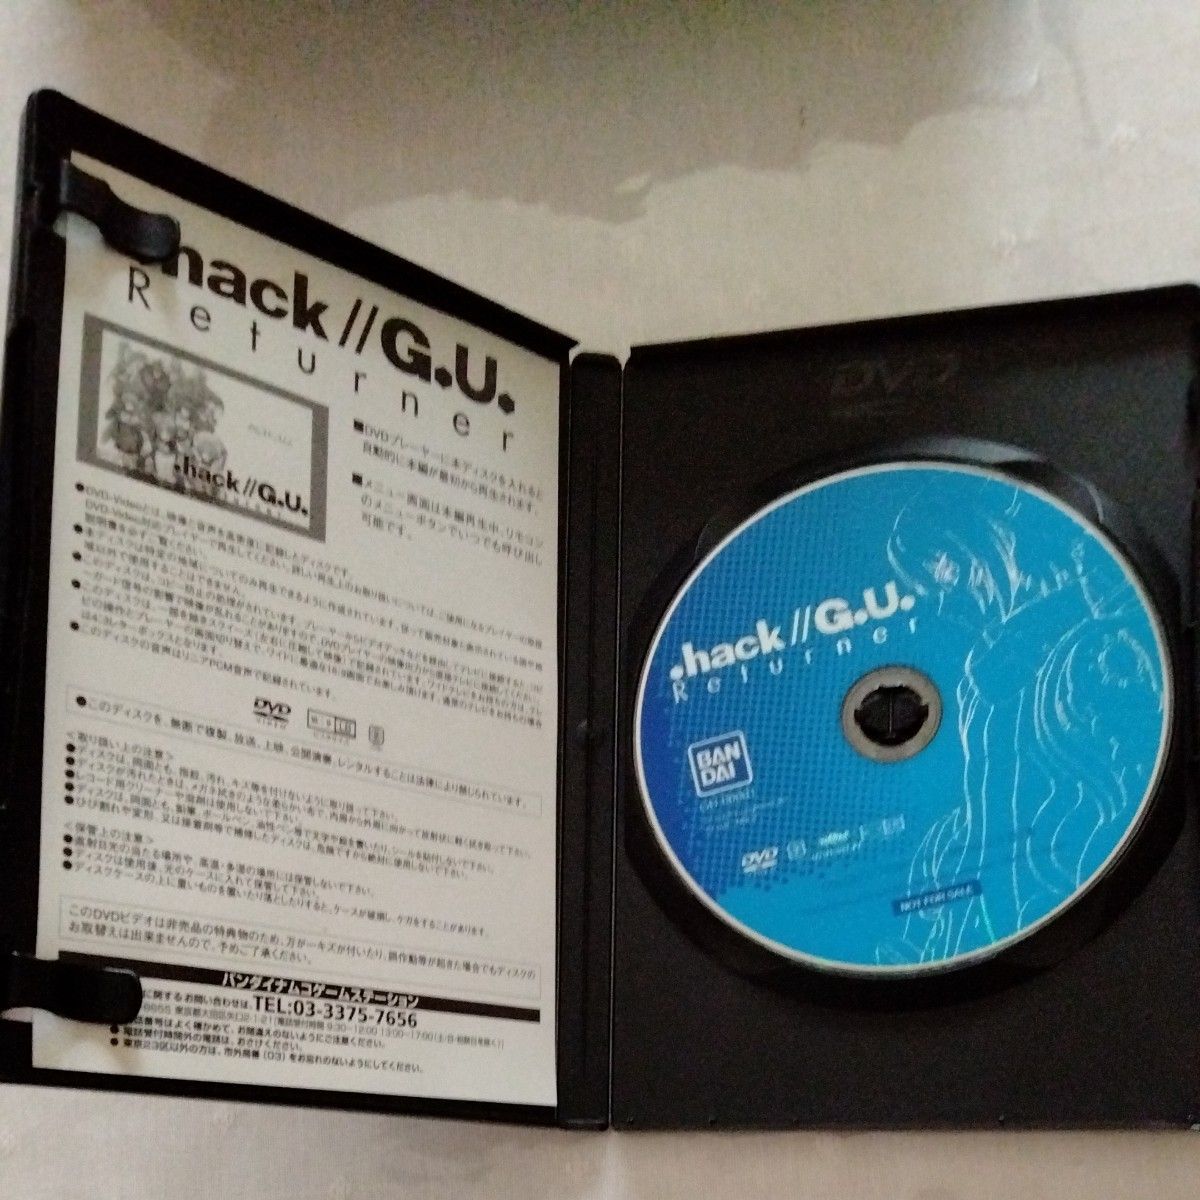 『.hack//G.U. Returner』（ドットハックジーユー リターナー）　PS2 3部作 全巻購入者特典DVD